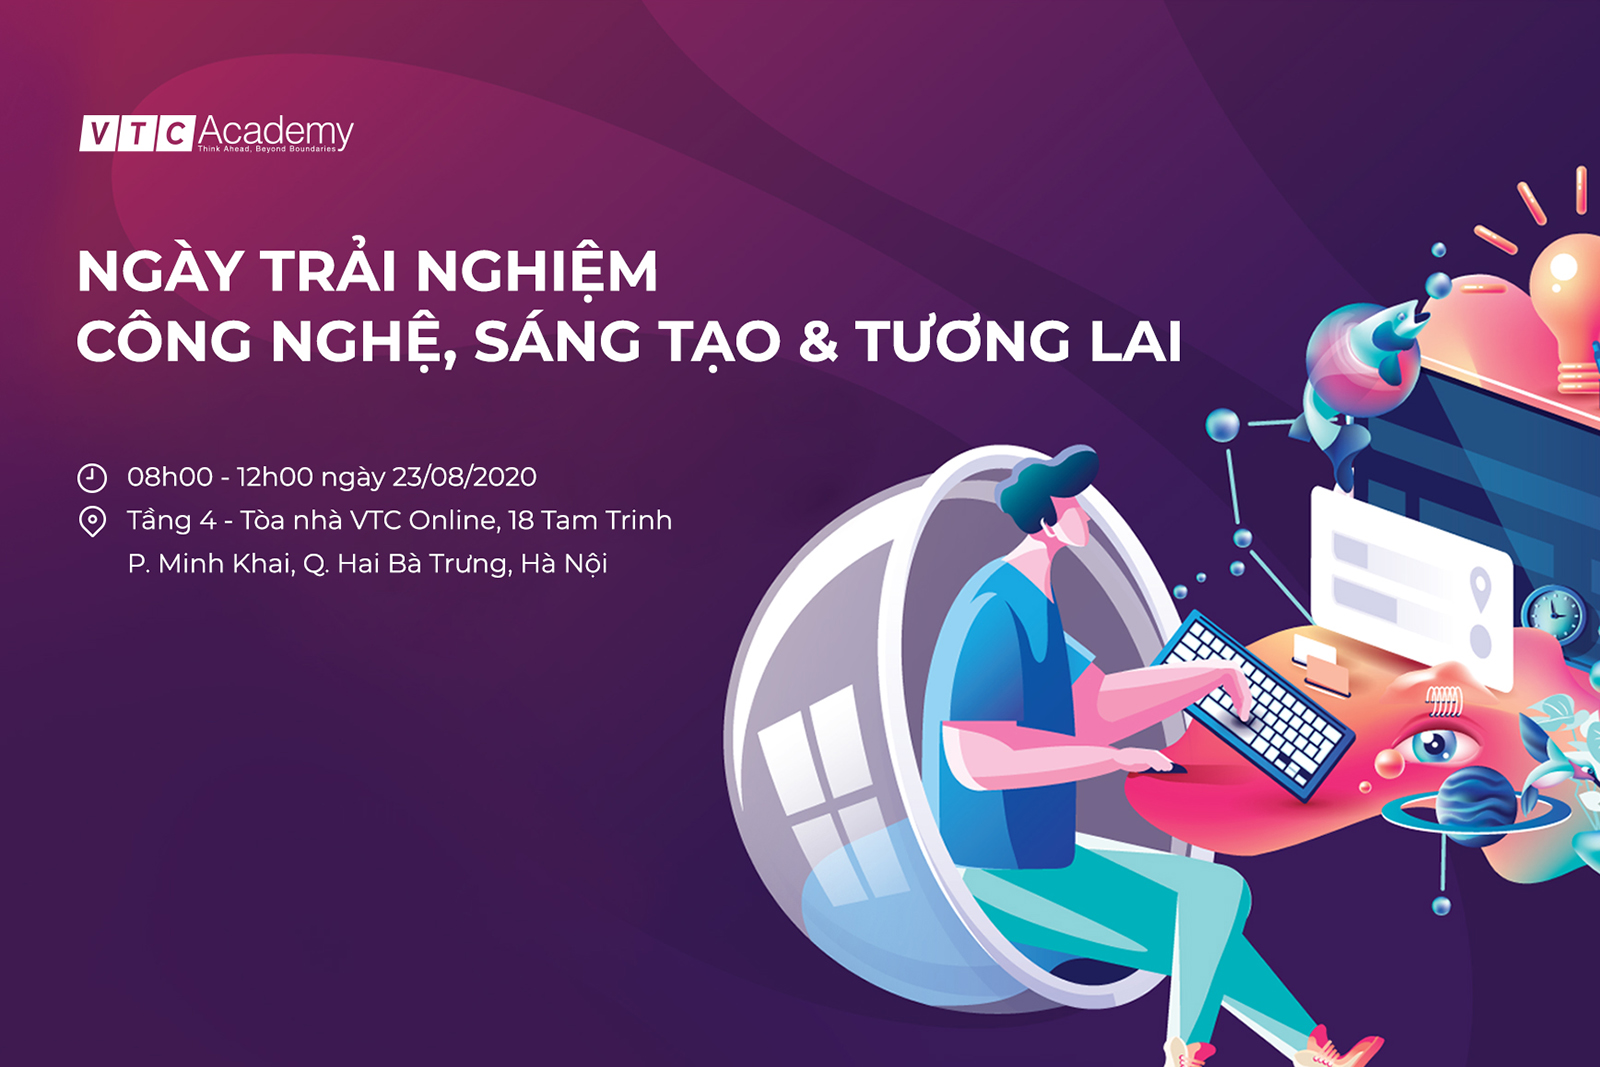 Ngày trải nghiệm Công nghệ, Sáng tạo & Tương lai tại Hà Nội